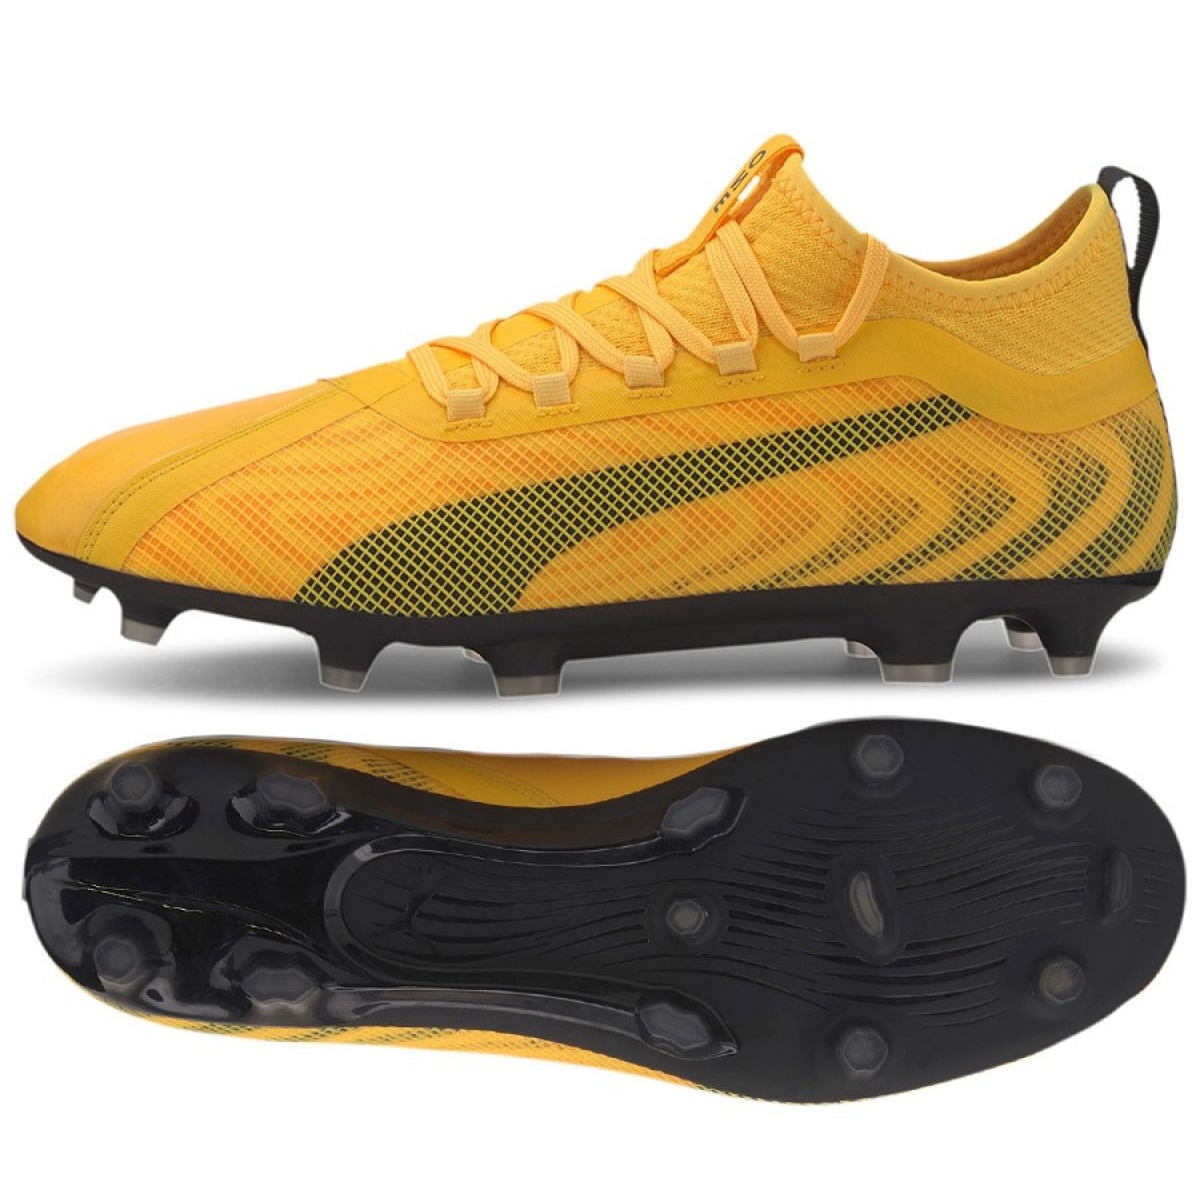 Buty piłkarskie Puma One 20.2 Fg Ag M 105823 01 żółte żółte